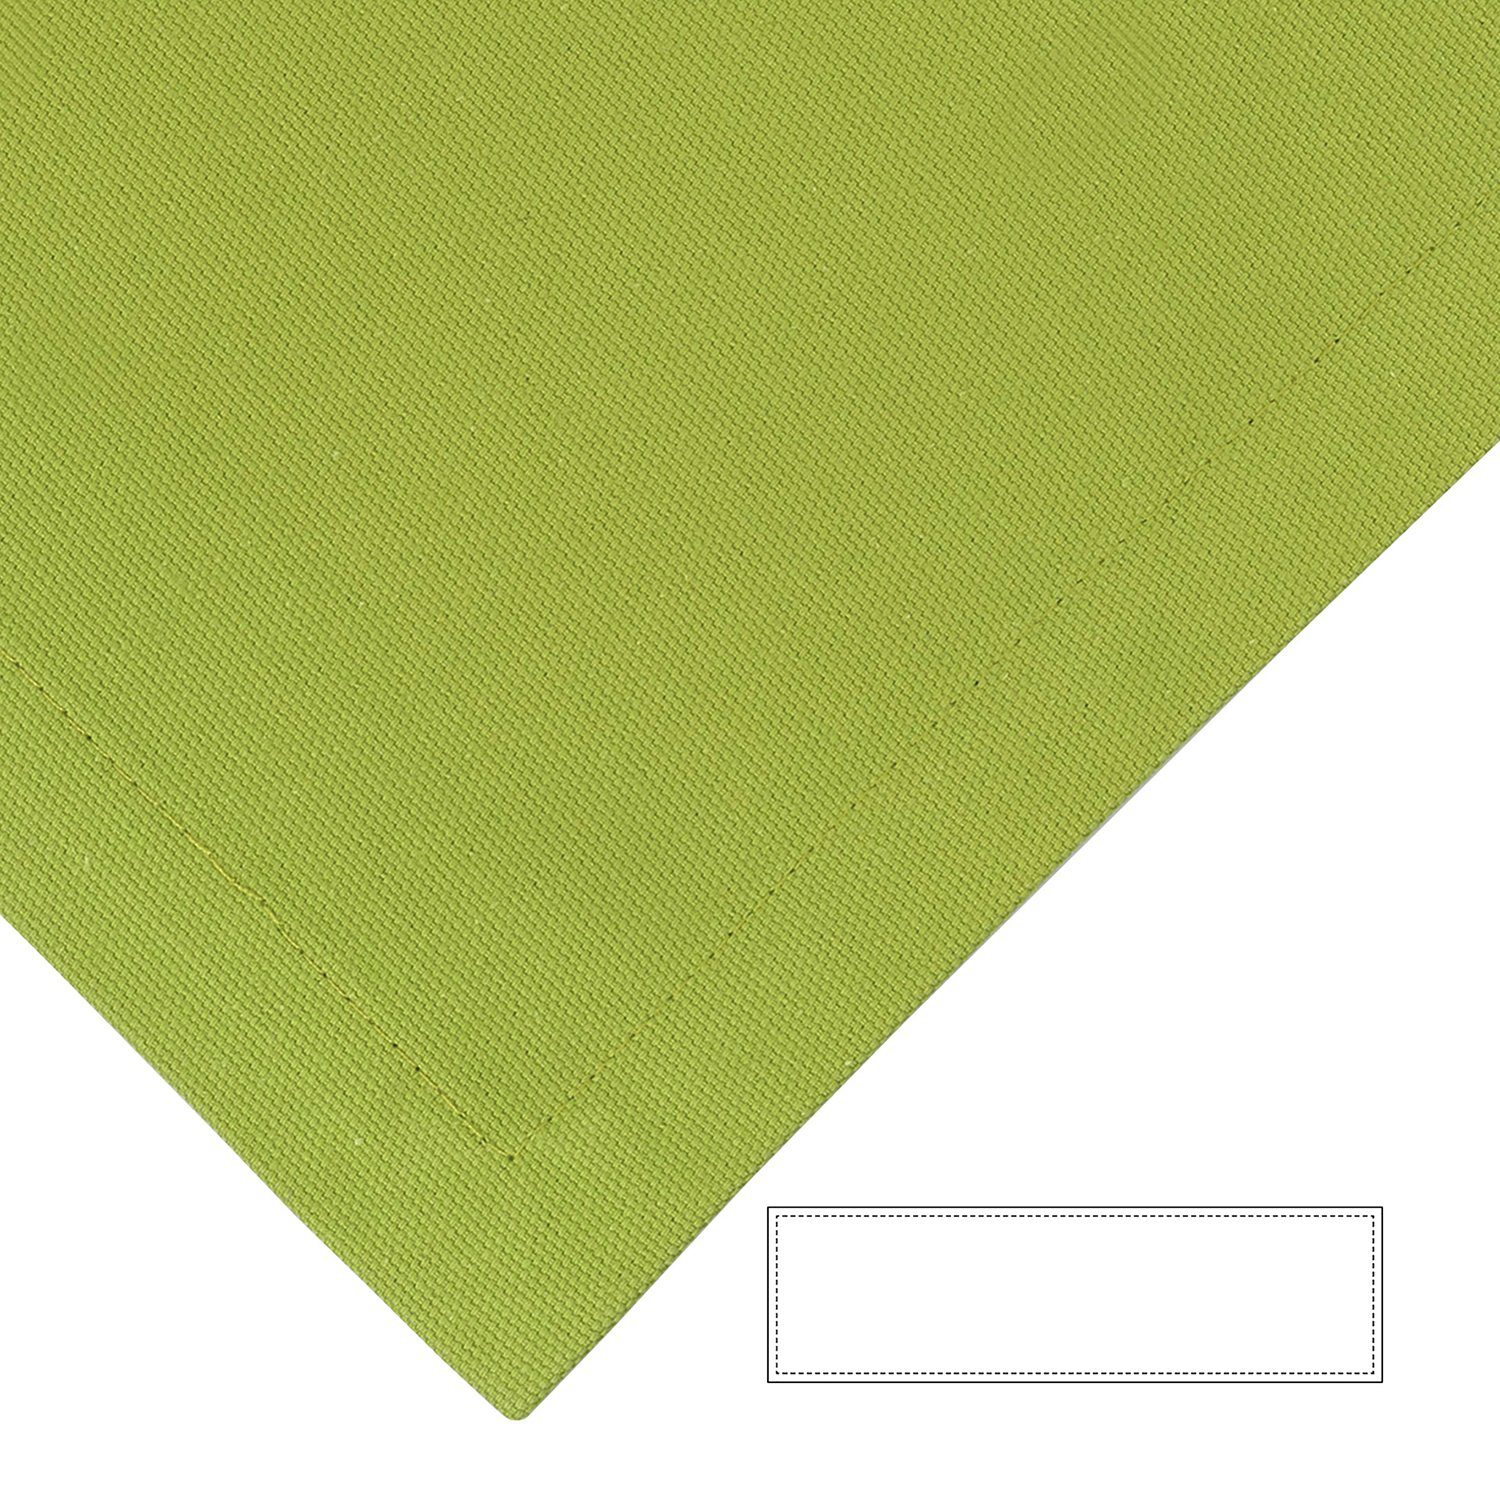 T.40cm, Tischdeko B.40cm Baumwolle Tischläufer - grün Bente Fink - Tischläufer - x 100%